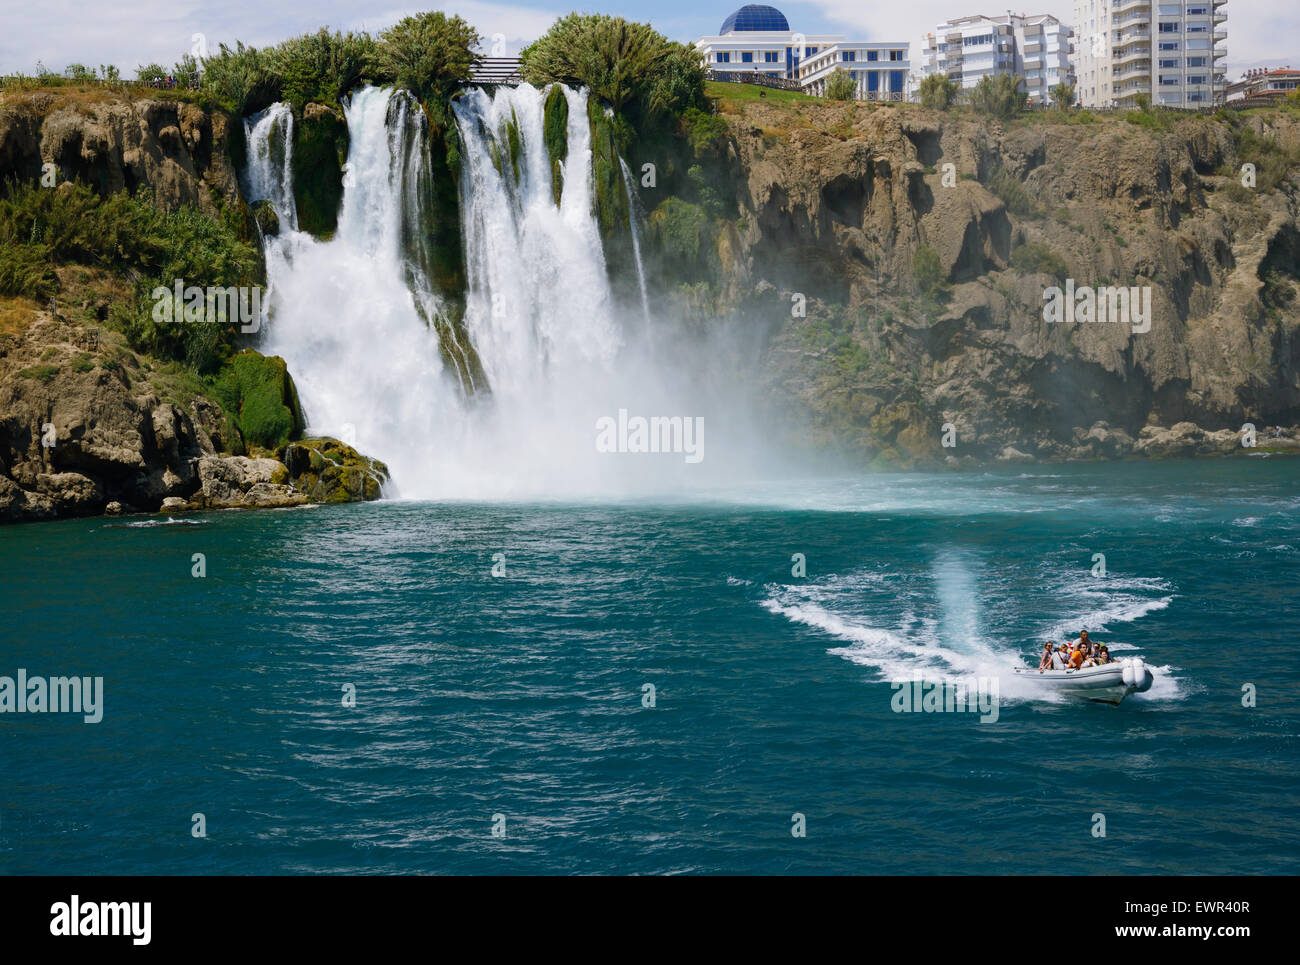 Duden waterfall (Karpuzkaldiran) in Antalya, Turkey Stock Photo